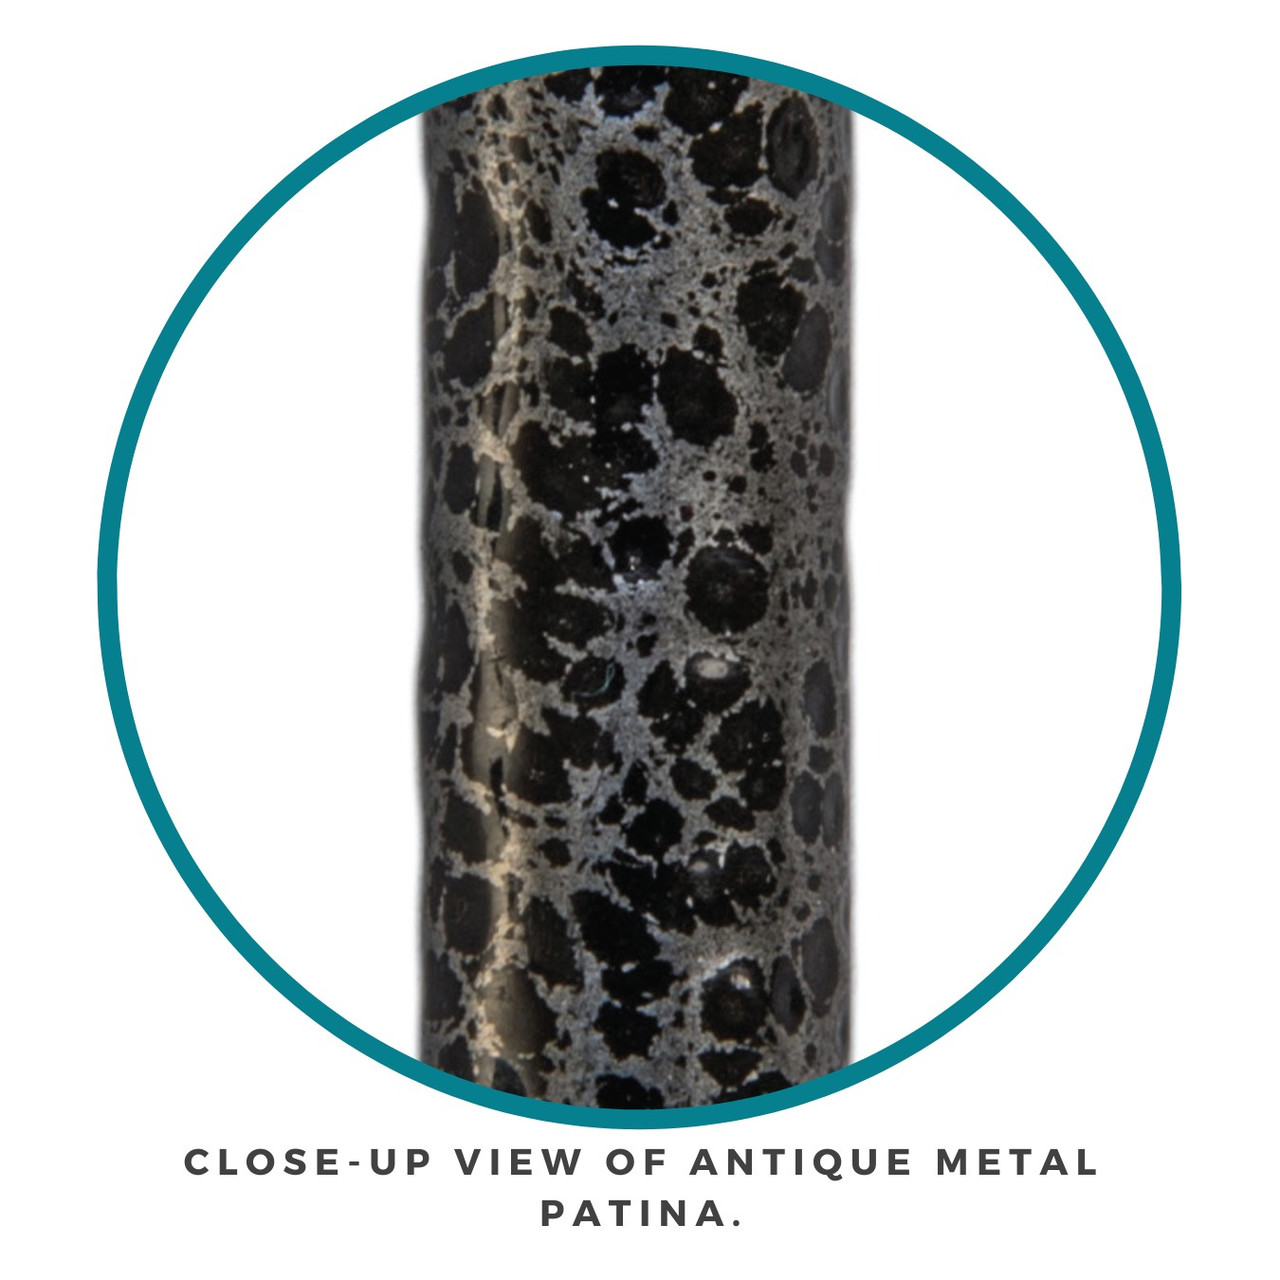 Close-up view of antique metal patina.